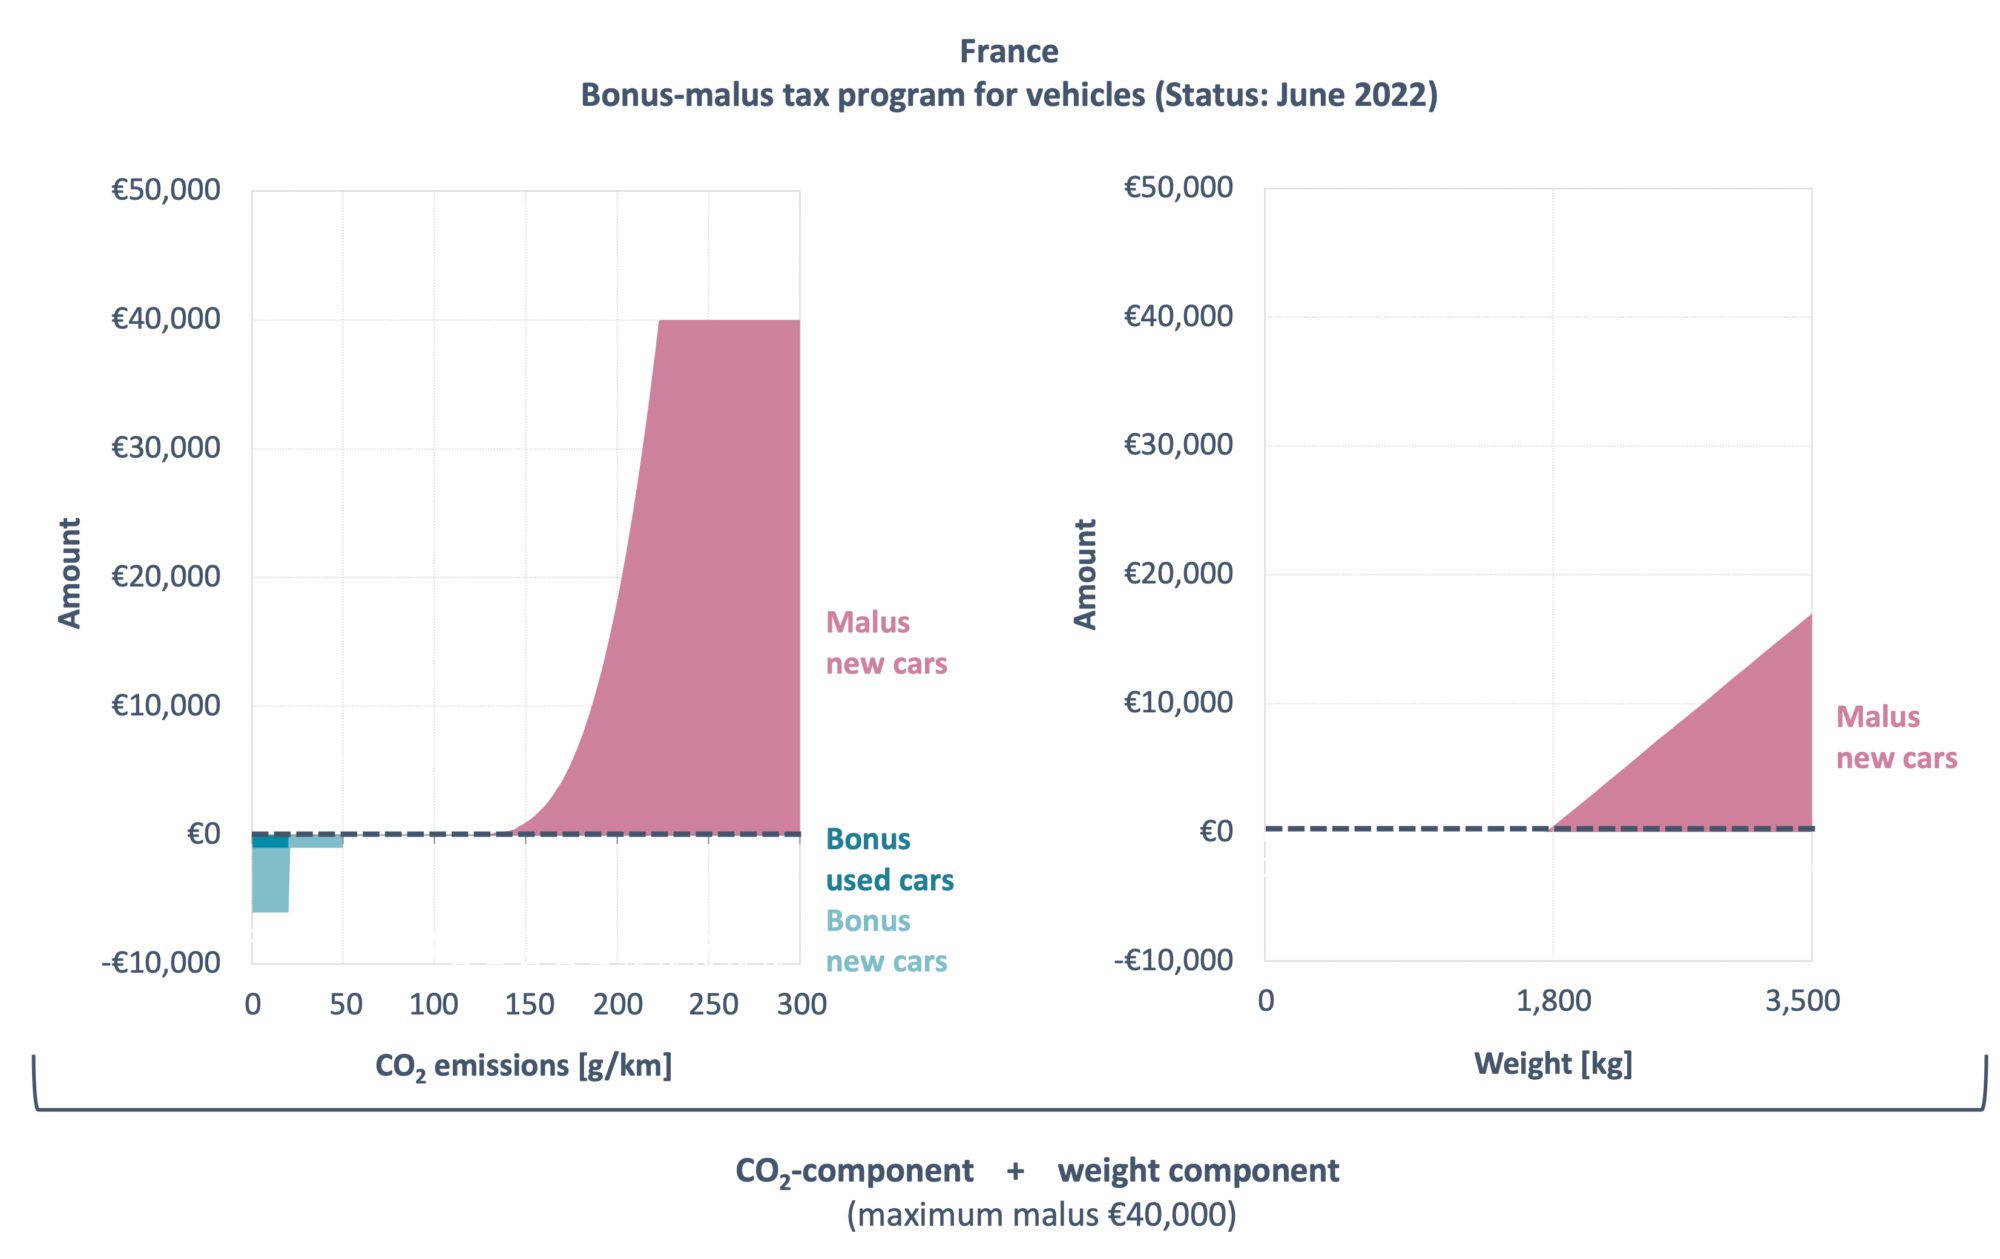 kaavio, joka näyttää Bonus-Malus -ohjelman Ranskassa